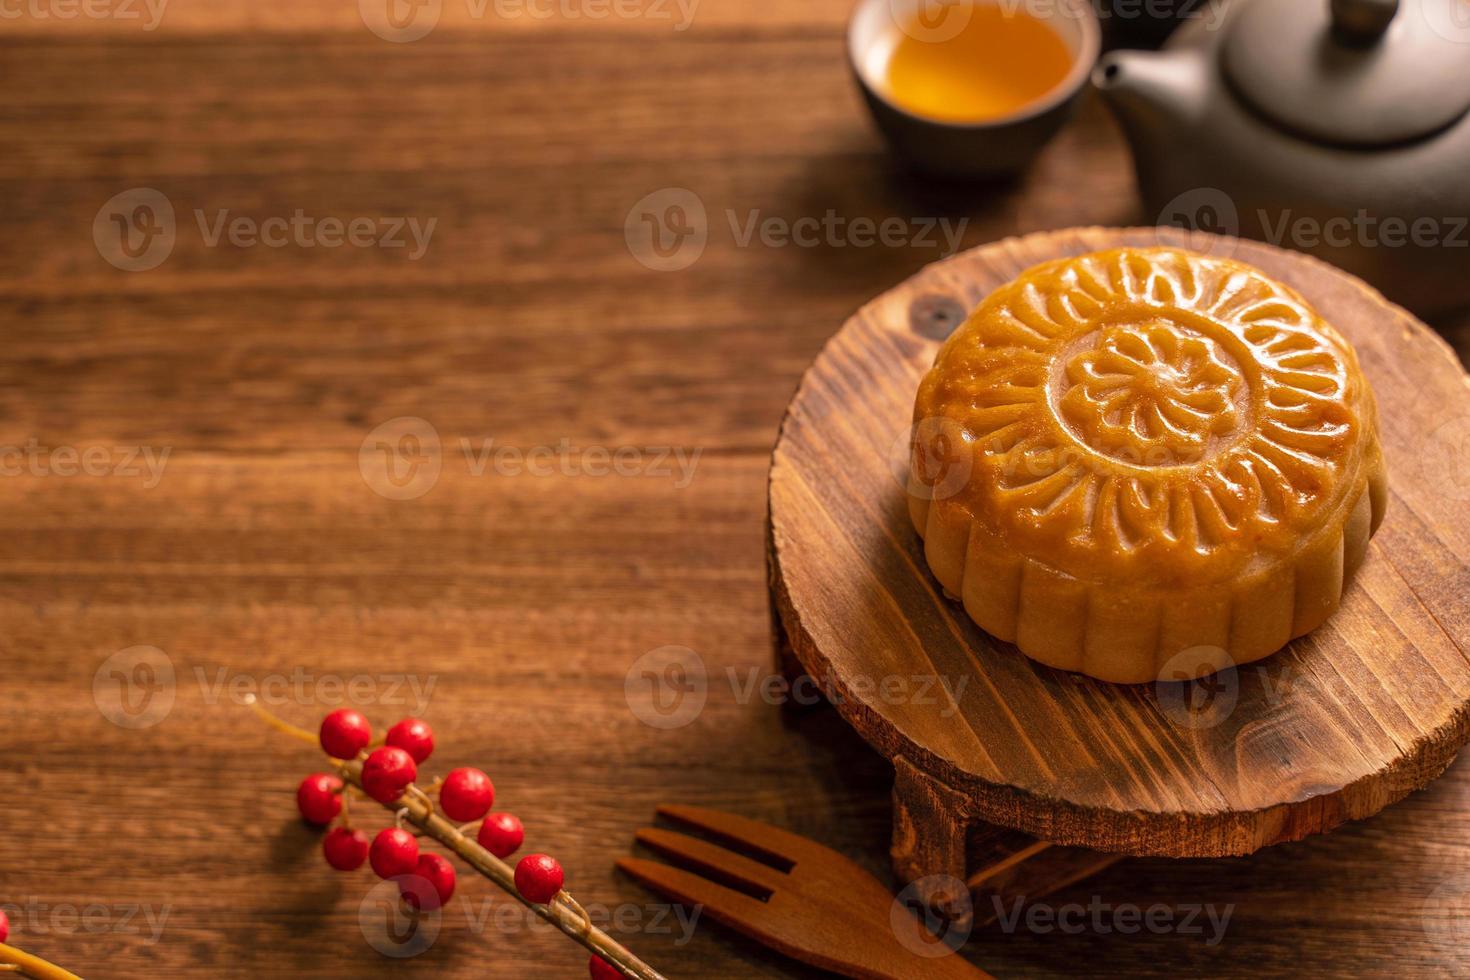 bolo de lua configuração de mesa de bolo de lua - pastelaria tradicional chinesa em forma redonda com xícaras de chá em fundo de madeira, conceito de festival de meio-outono, close-up. foto